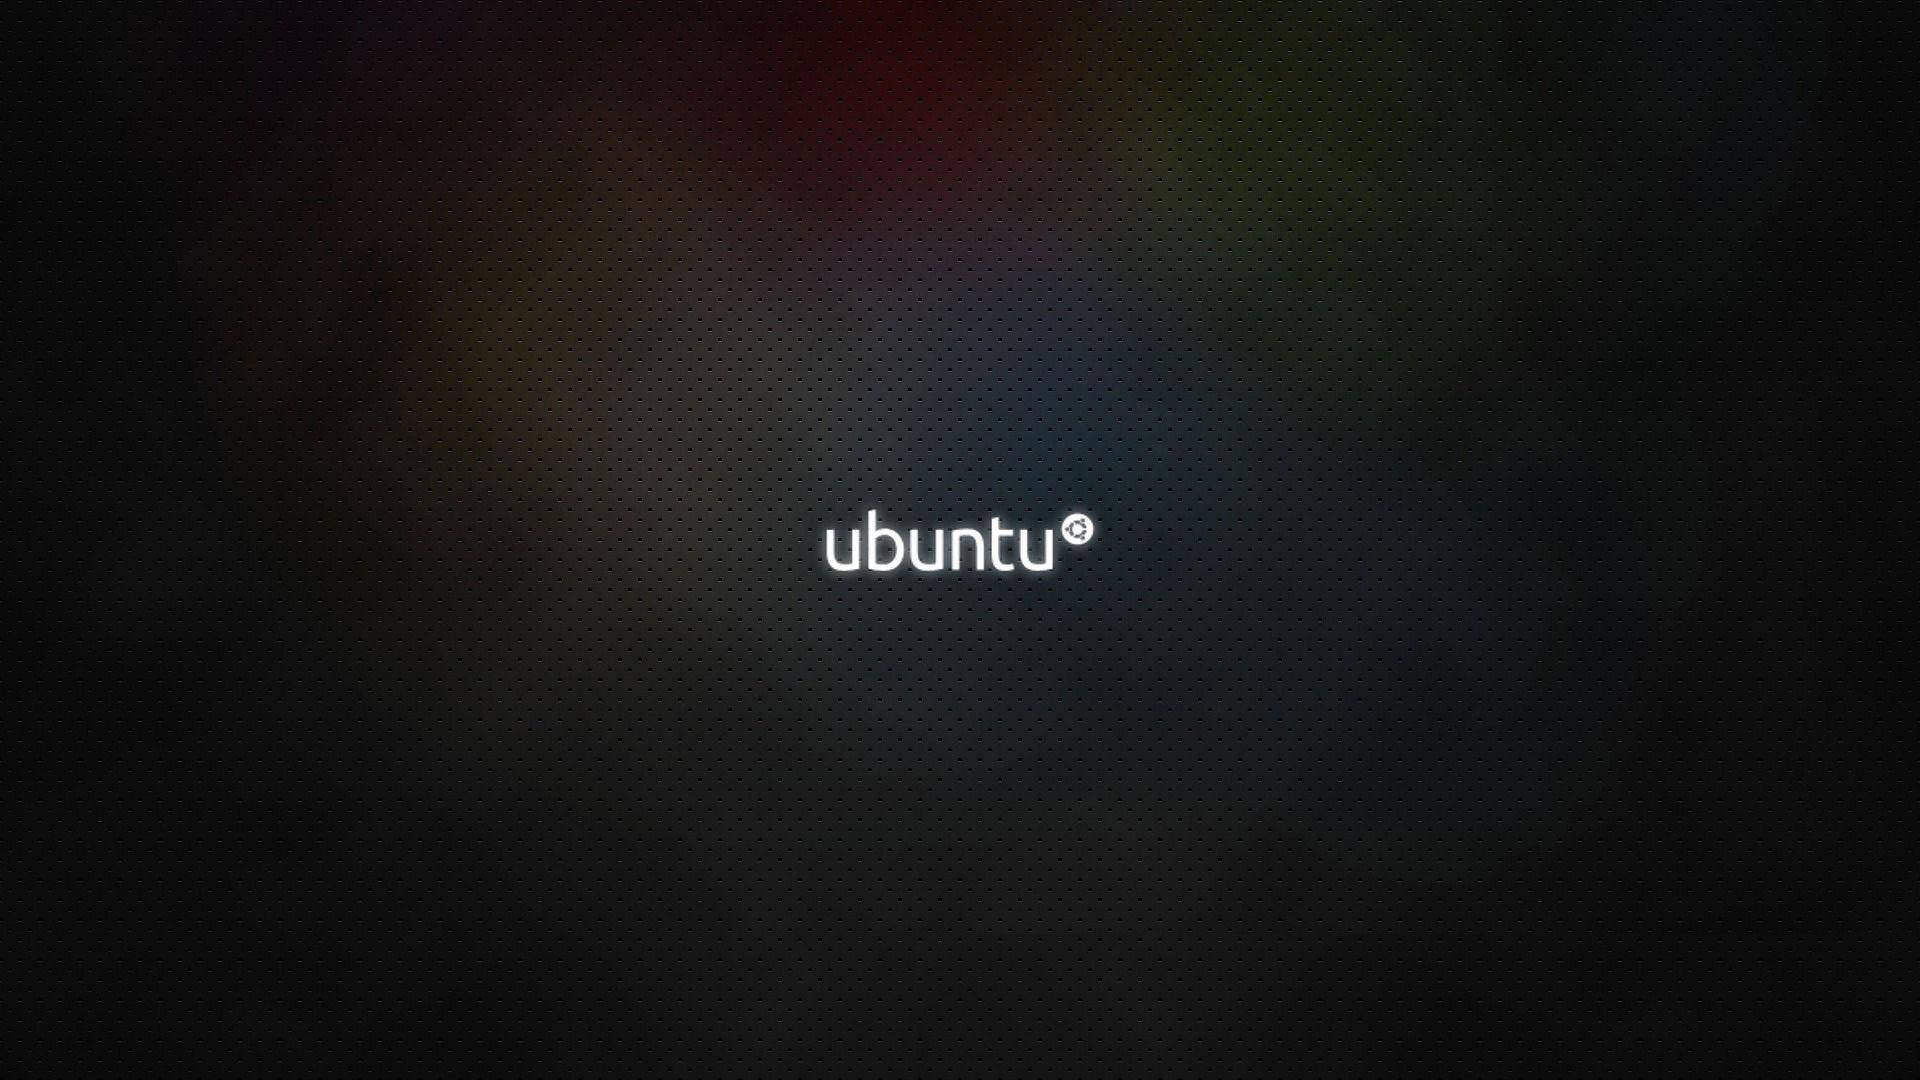 Simple Linux Desktop Ubuntu Logo Wallpaper